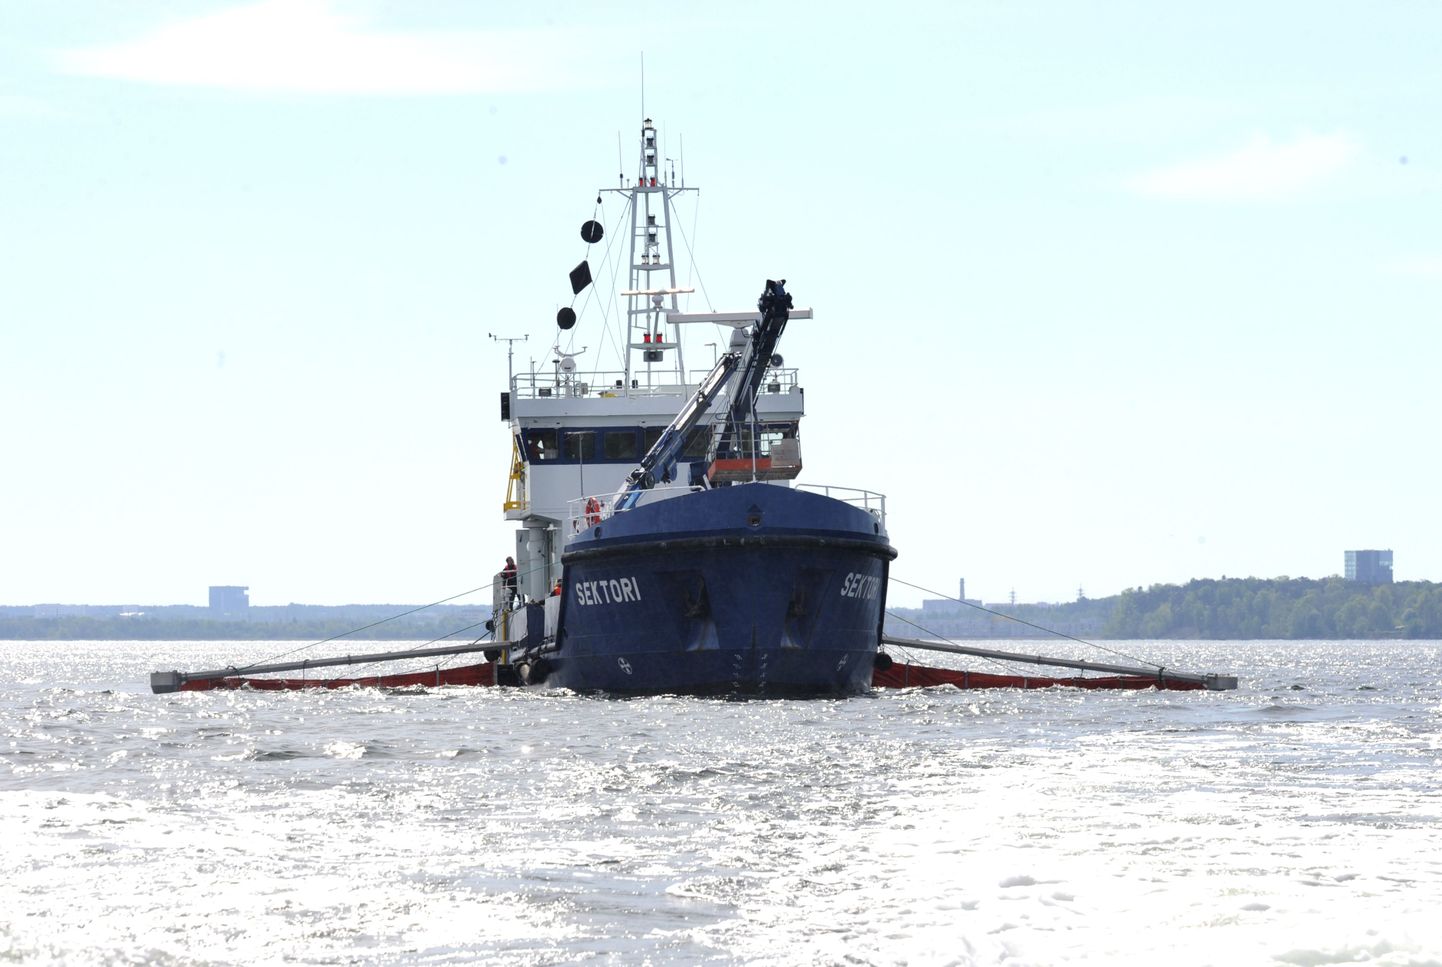 Eesti-Soome ühine merereostustõrje õppeoperatsioon Kopli lahes. Pildil veeteede ameti rendile võetud hüdrograafialaev Sektori.